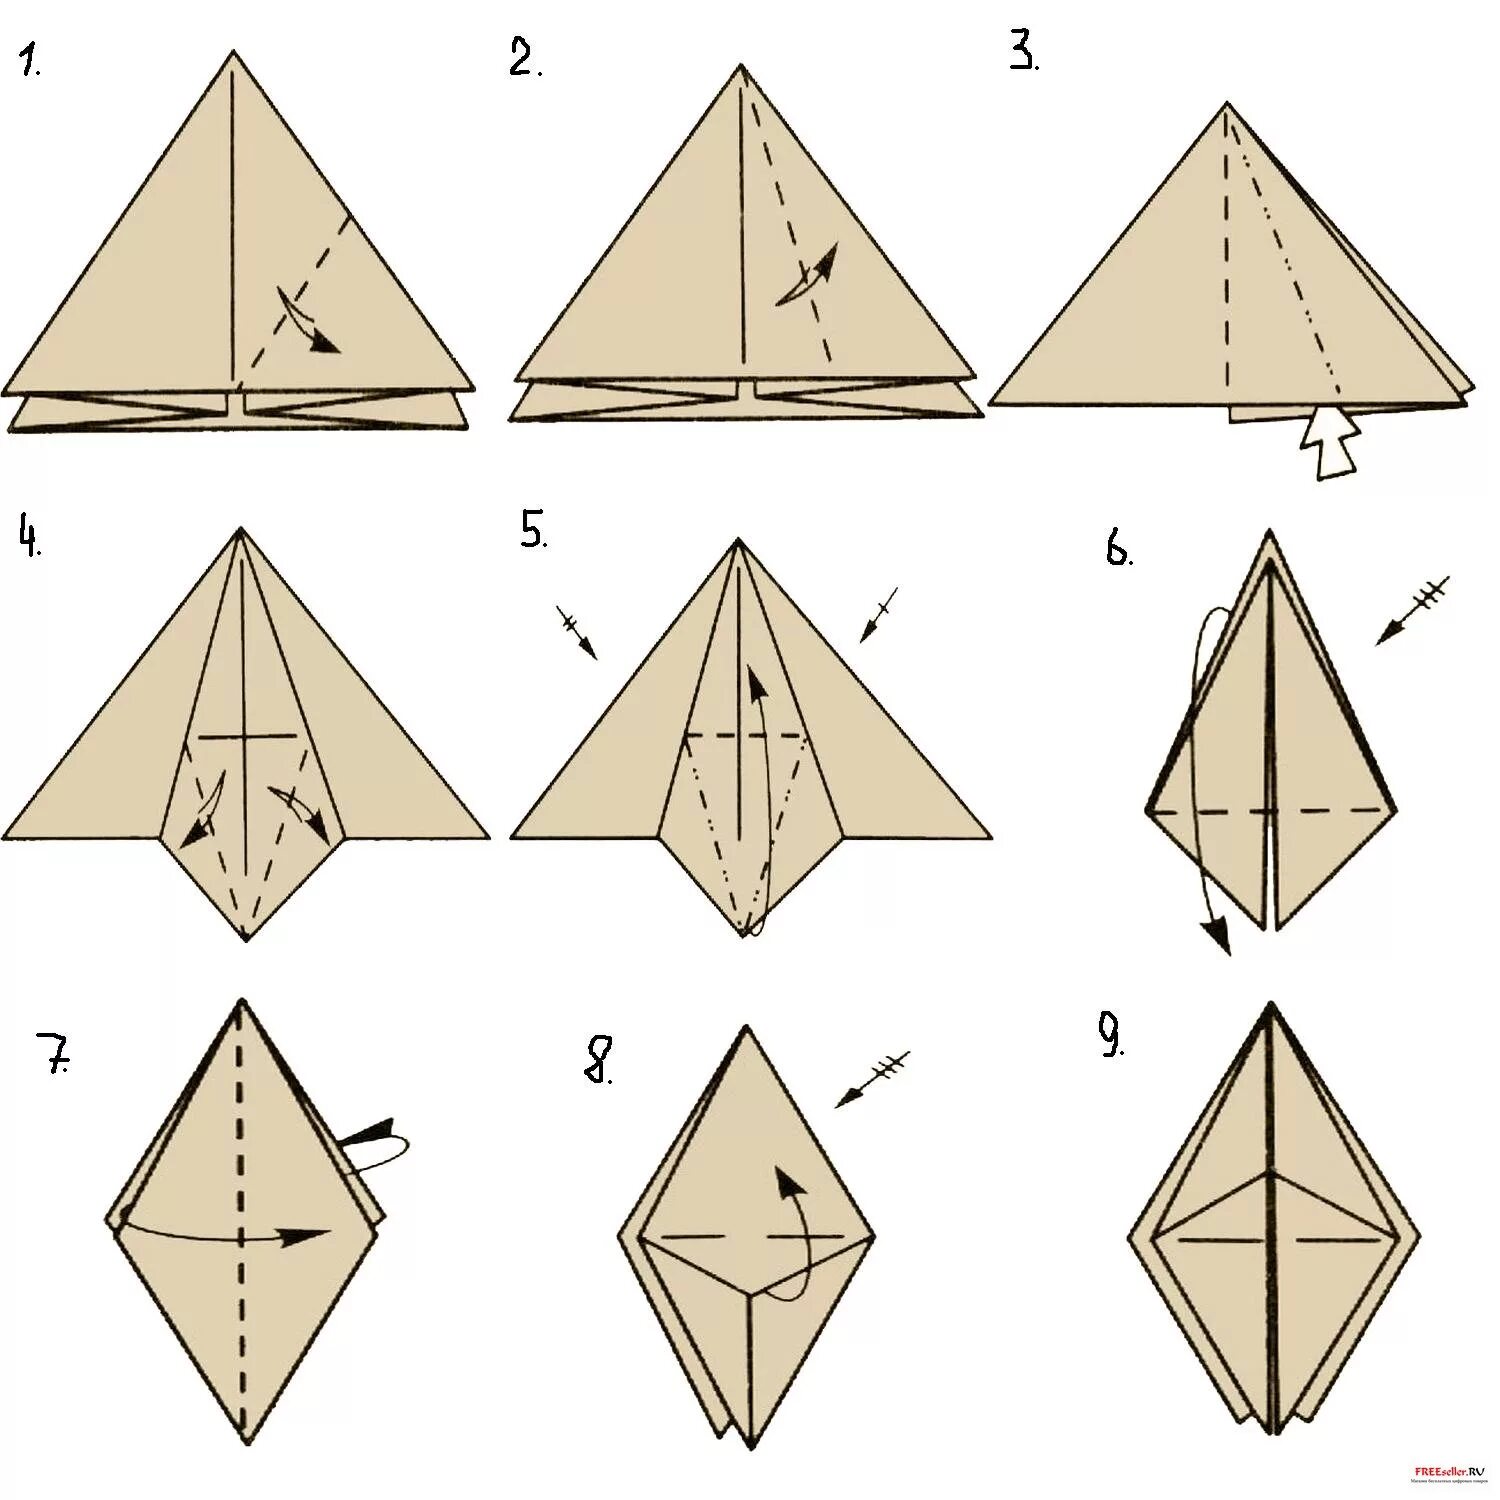 Как сделать лягушку из бумаги. Как сделать оригами лягушку из бумаги а4. Как сделать лягушку из листа бумаги а4. Оригами лягушка из бумаги на руку. Лягушка из бумаги треугольная.